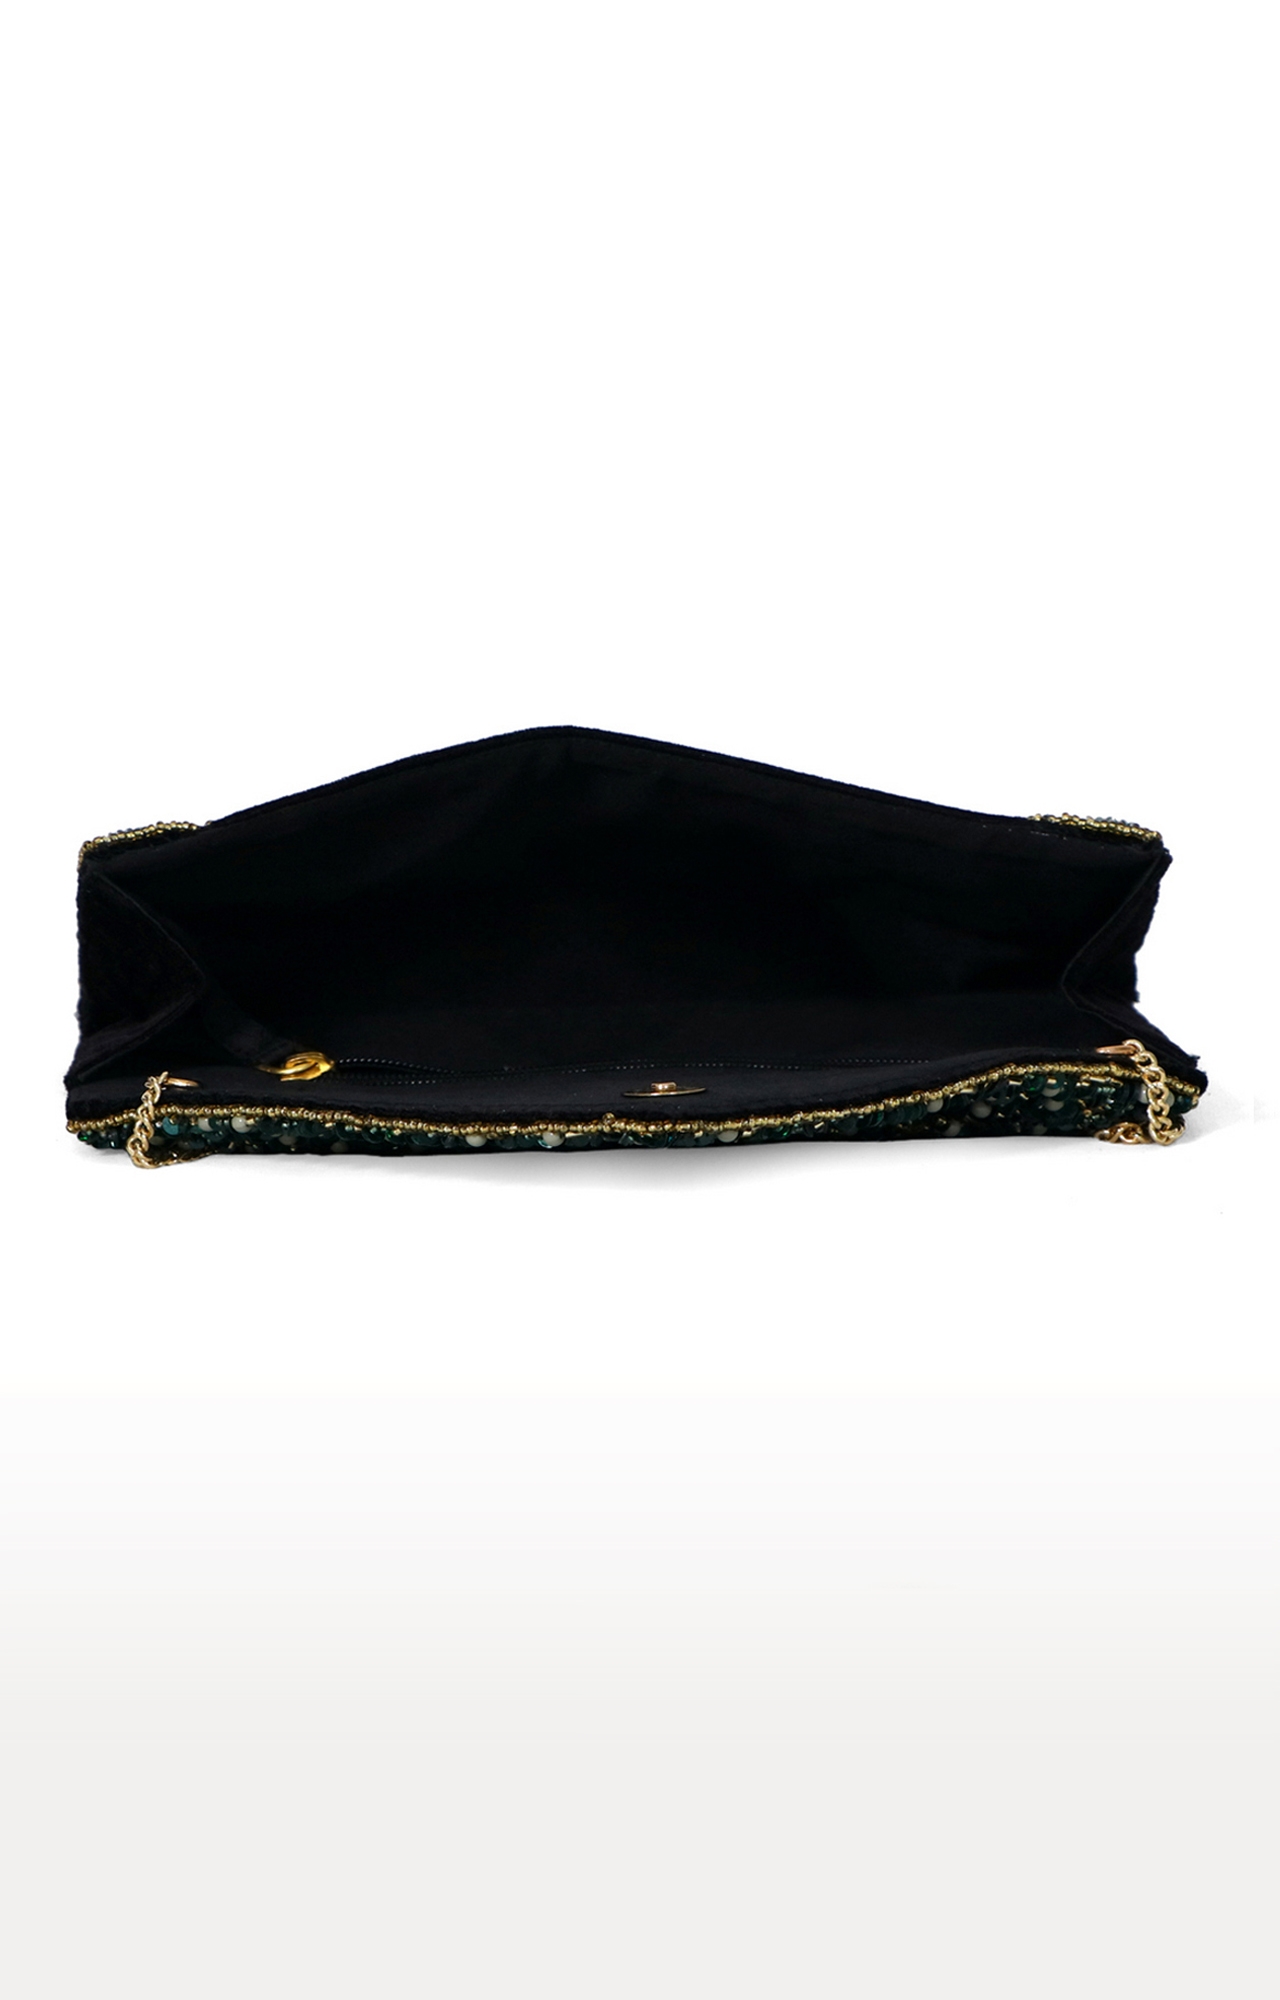 DIWAAH | Diwaah Black Embellished Sling Bags 3